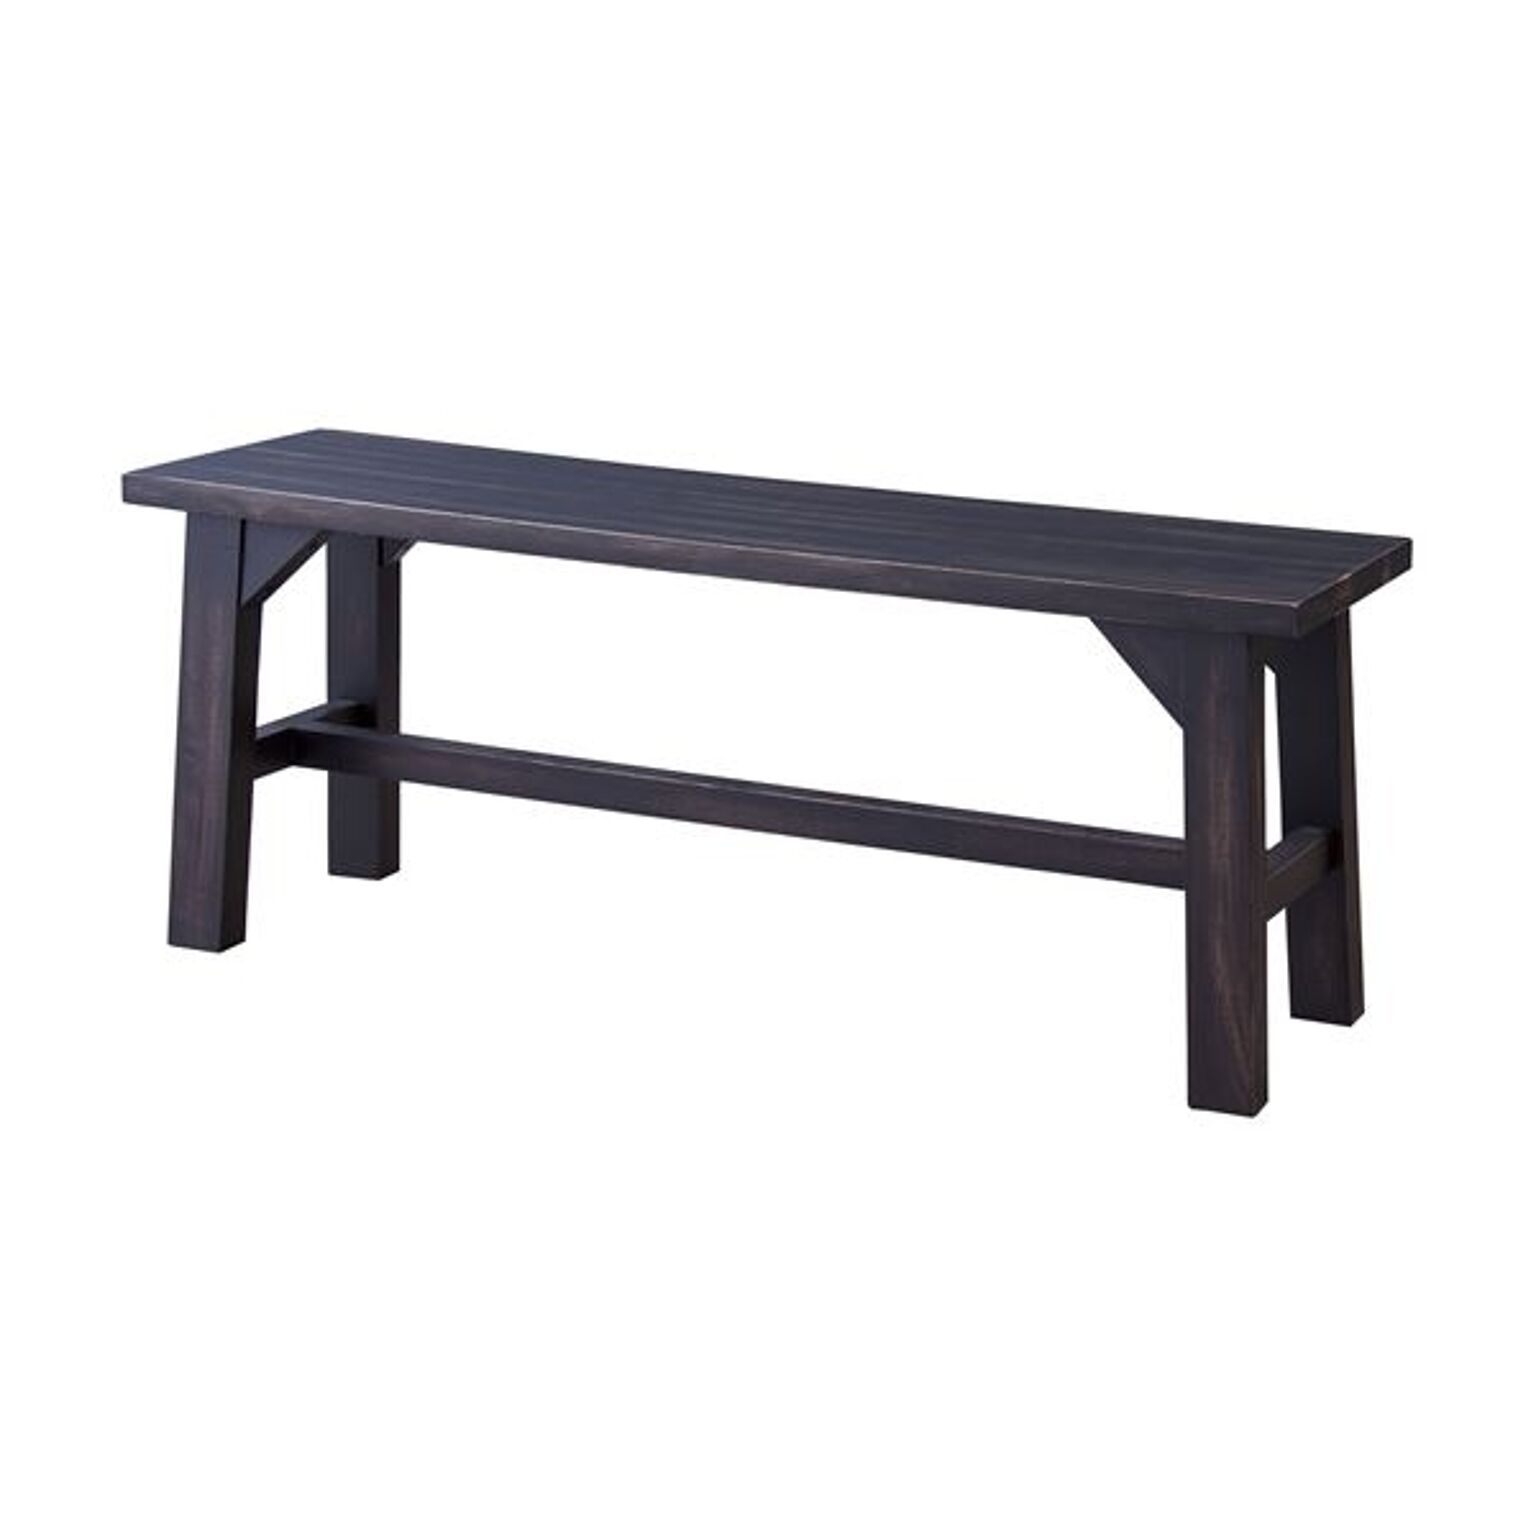 マホガニーダイニングベンチチェア/食卓椅子 【幅115cm】 木製 NW-883B